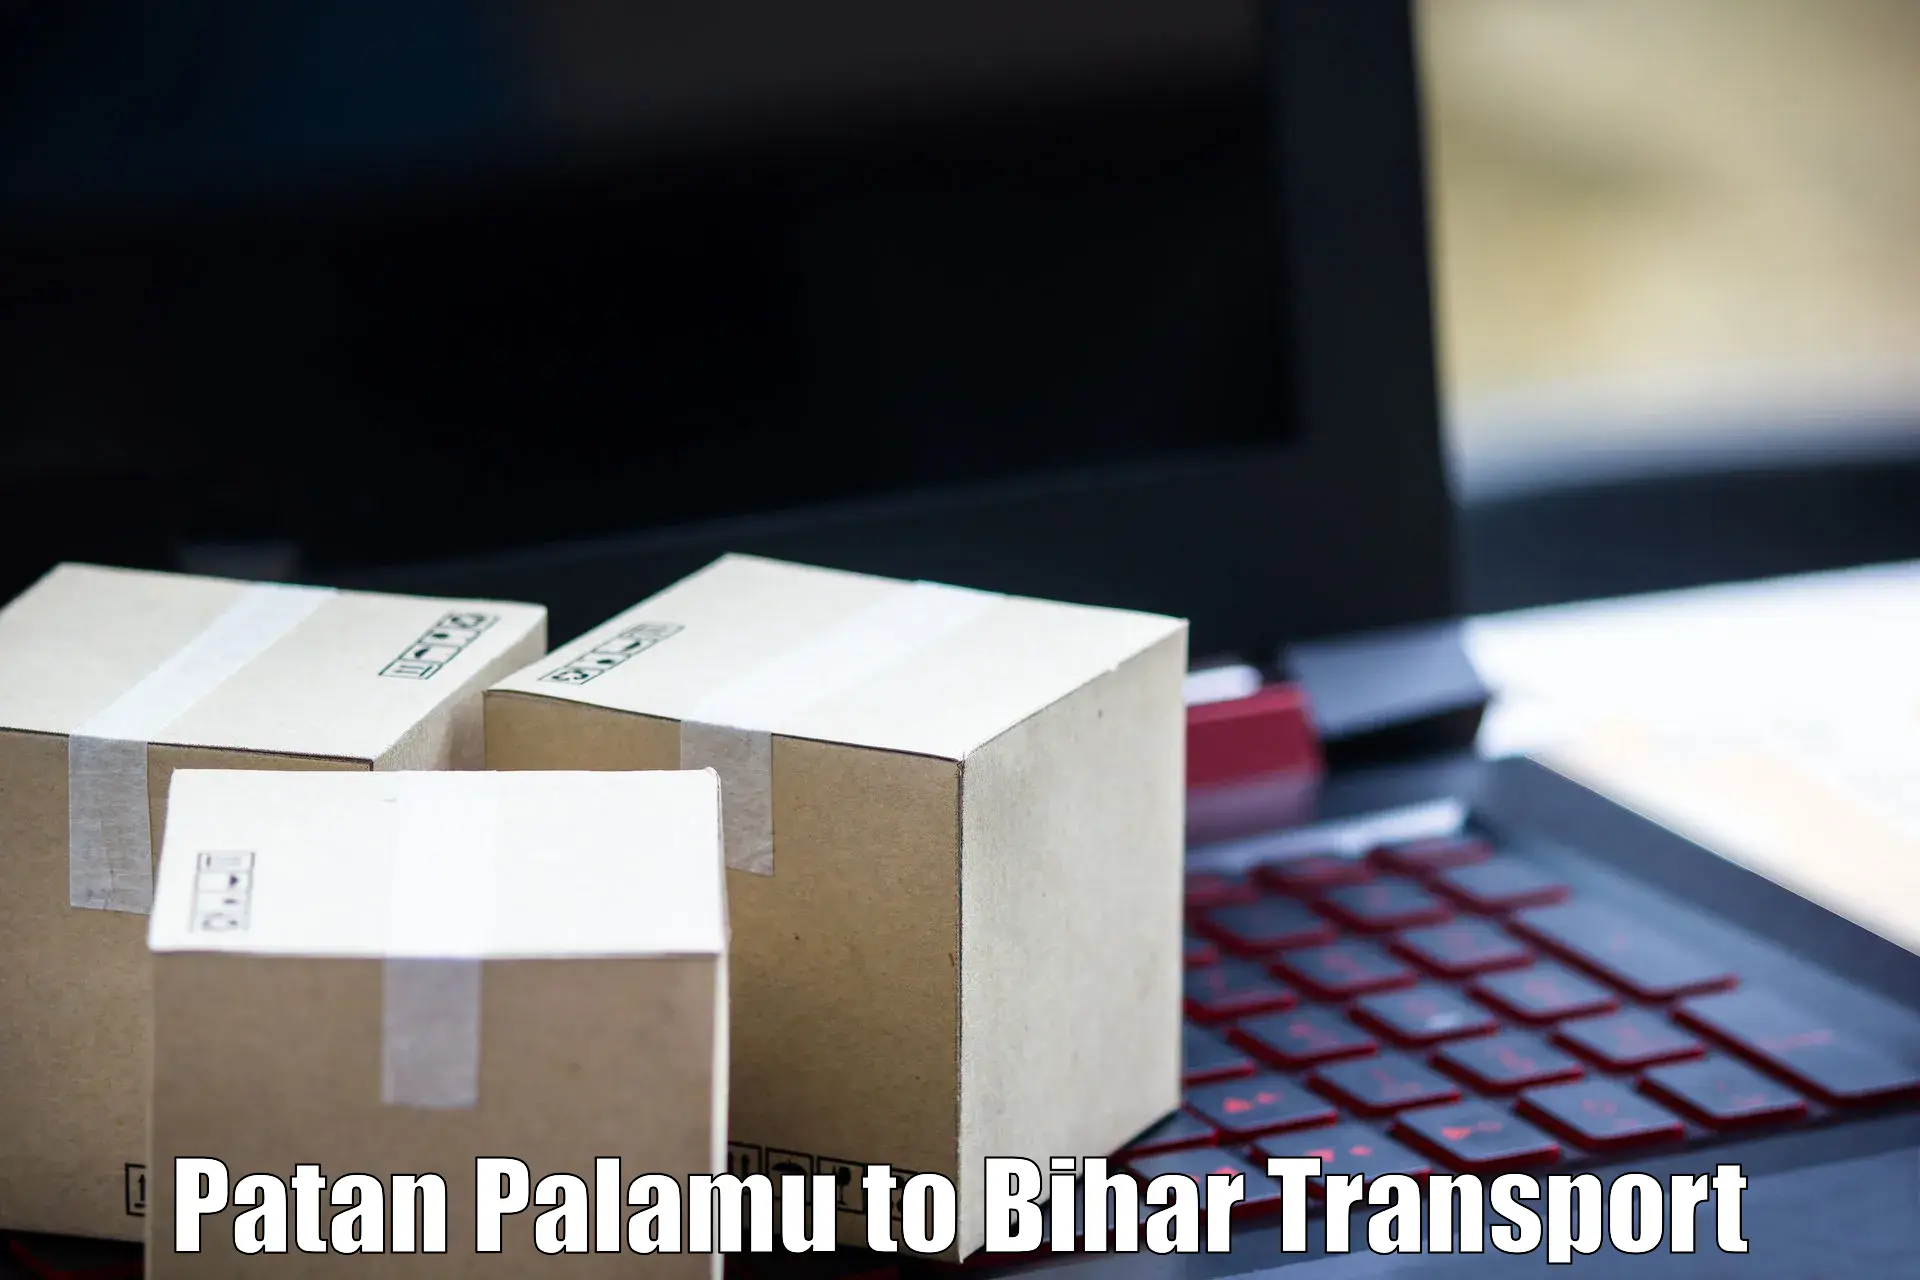 Shipping partner Patan Palamu to Mohiuddin Nagar